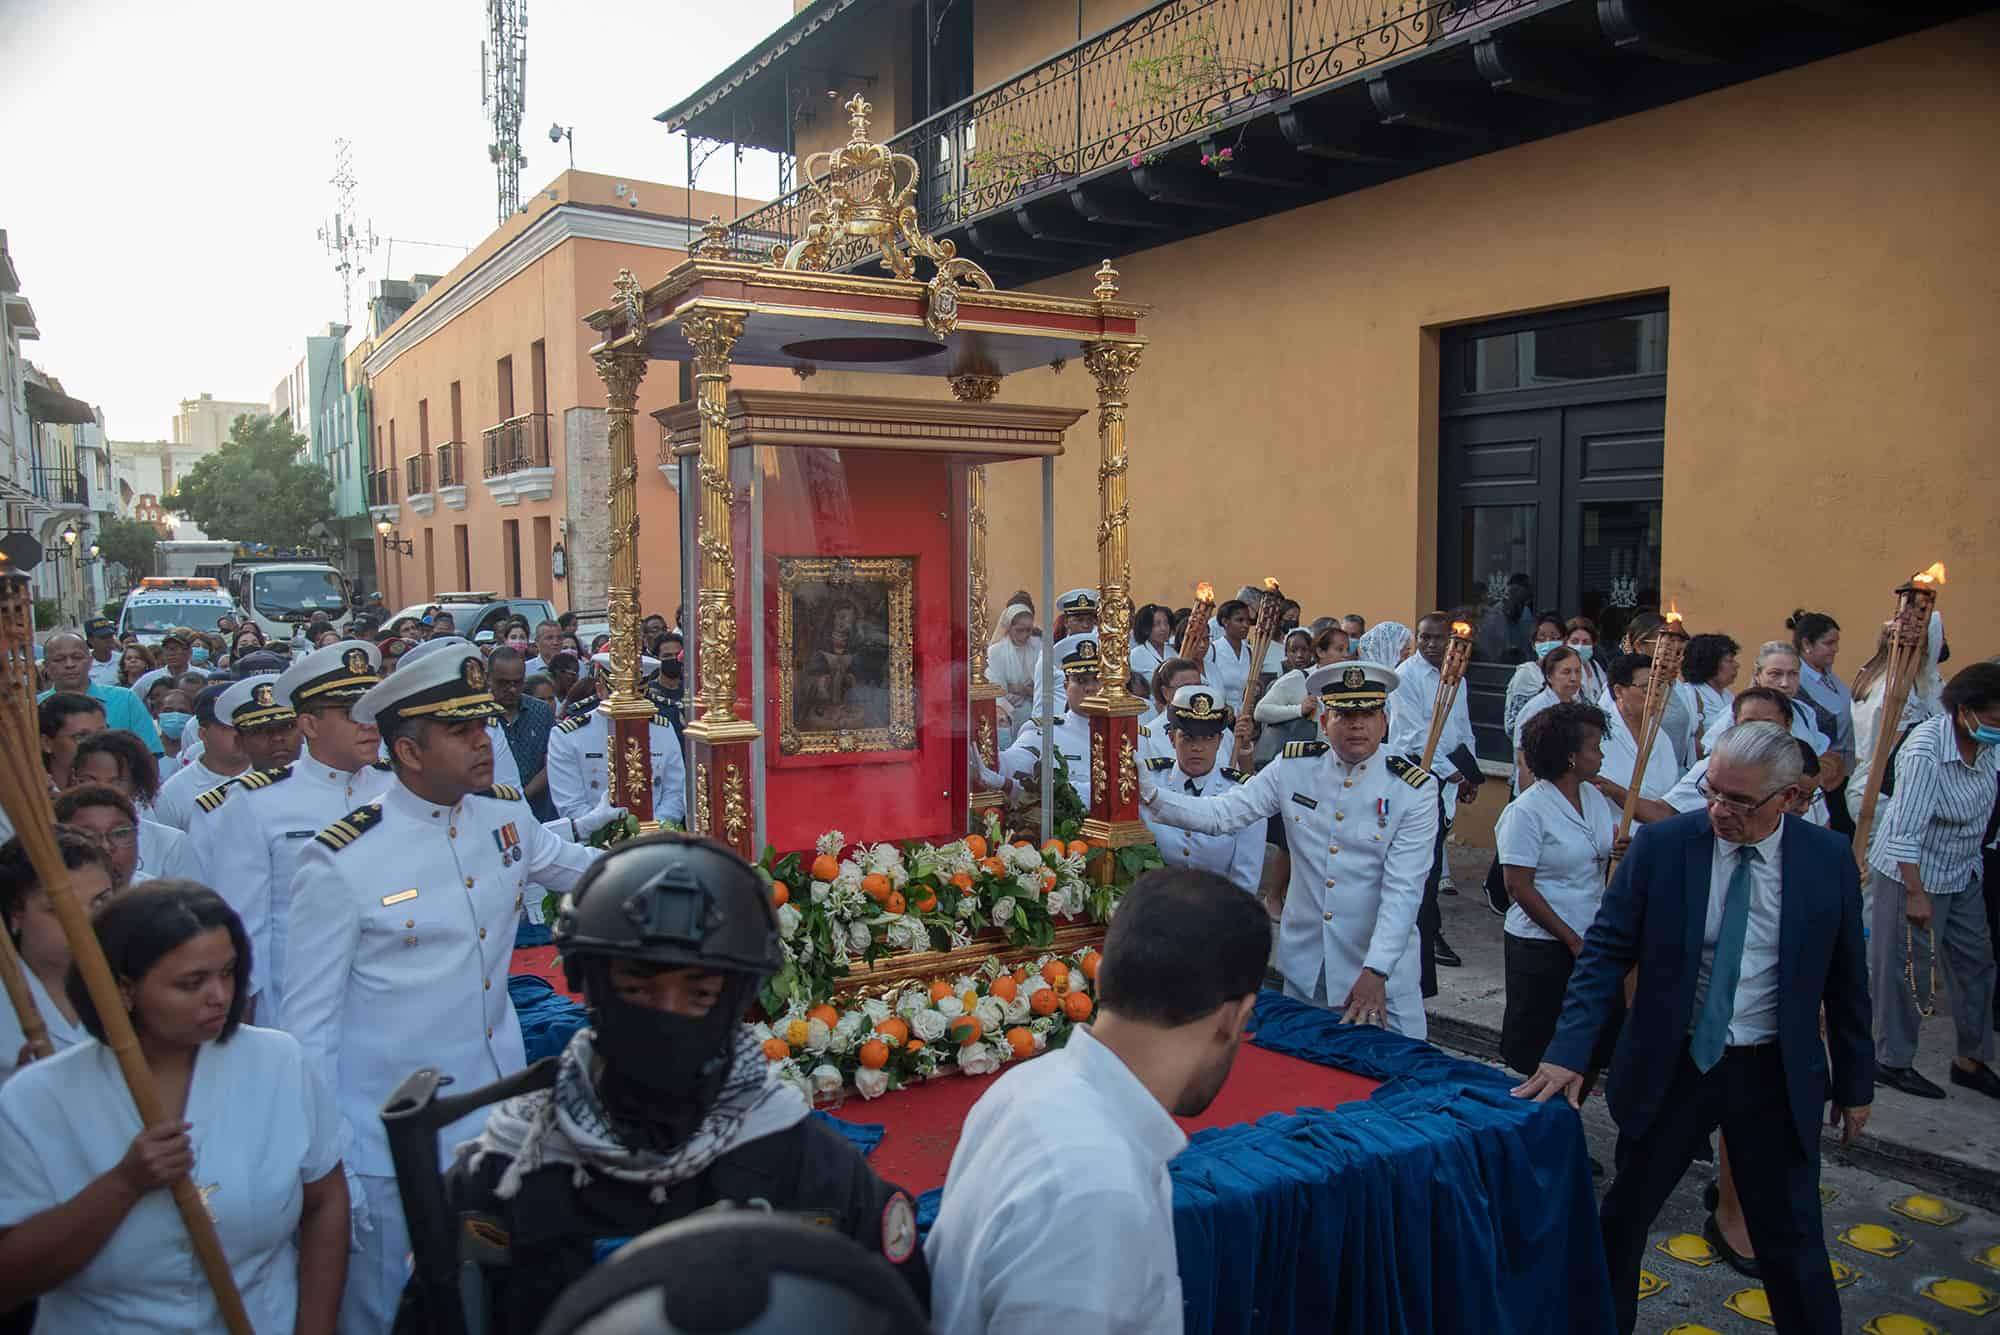 Efectivos de diversos cuerpos de seguridad del país acompañaron el paso de la carroza que transportó la imagen de la Virgen de la Altagracia en su ruta hacia el Estadio Olímpico Félix Sánchez.